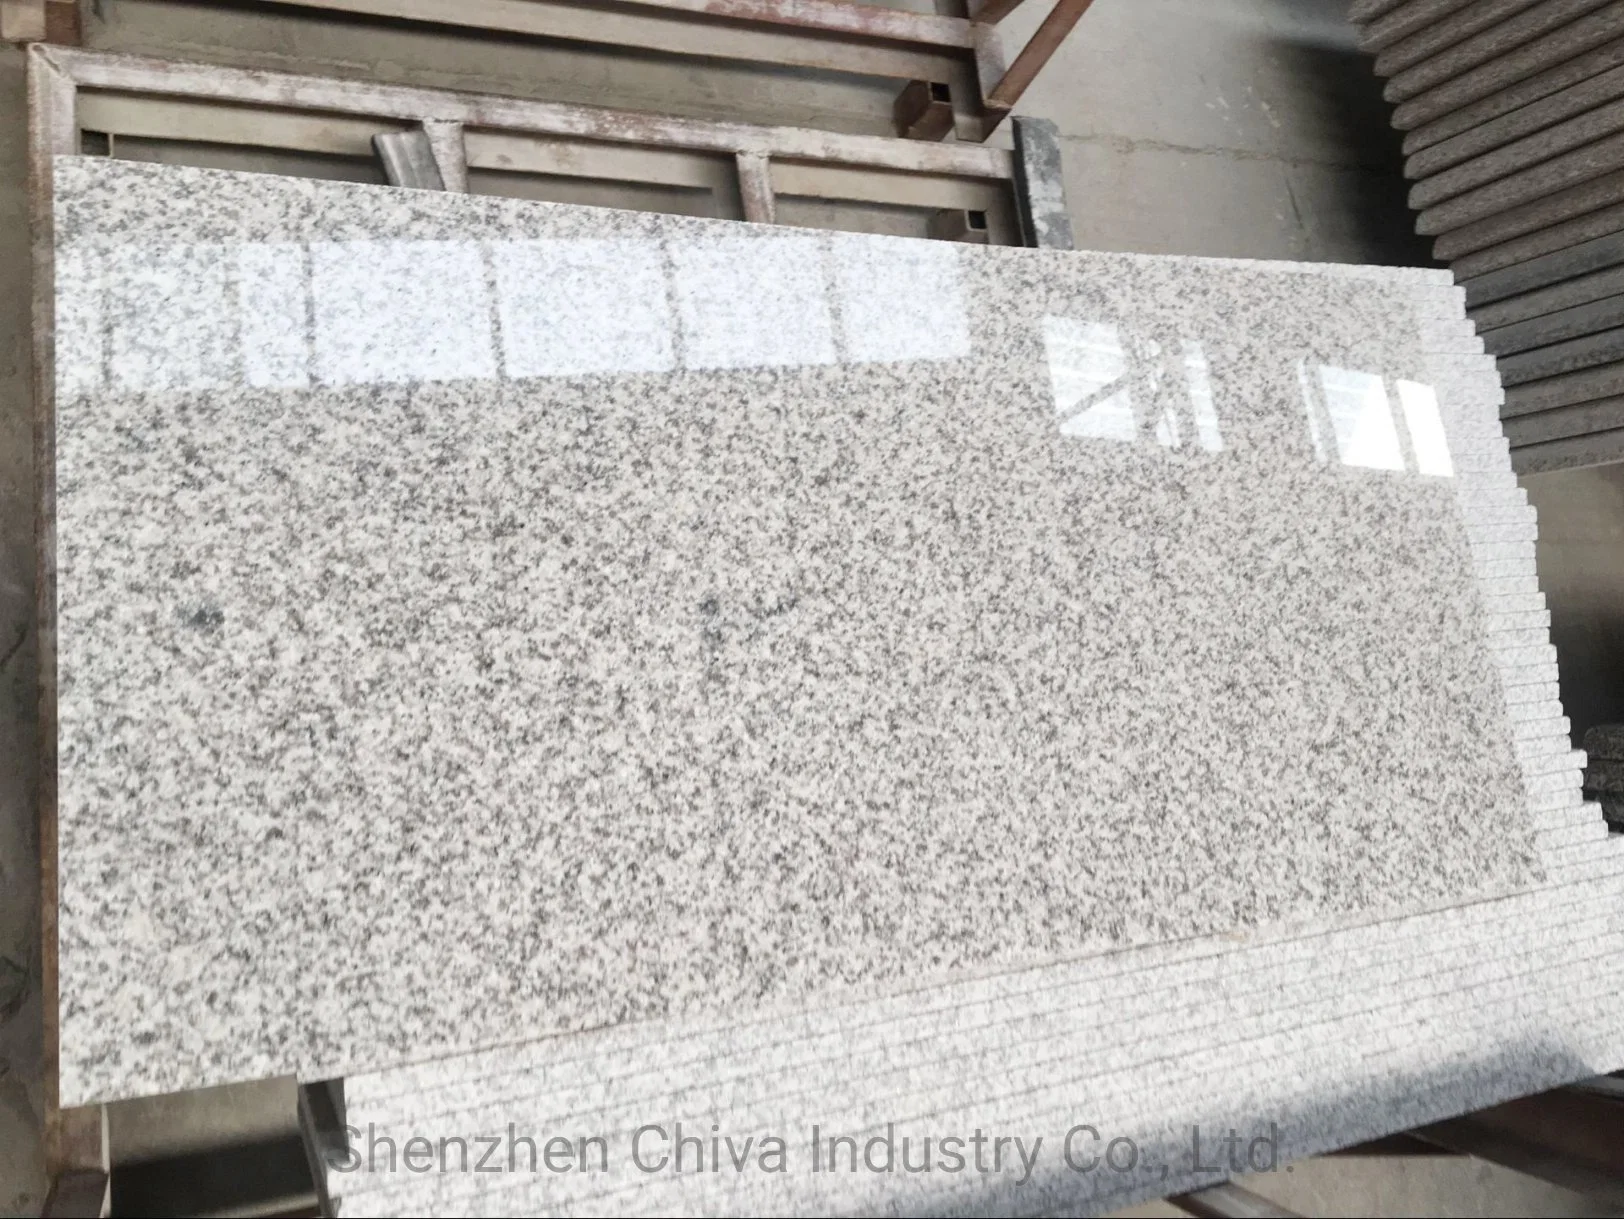 Cheap White/Gray Granite Cladding Stone Exterior Wall Facade Tiles Panels